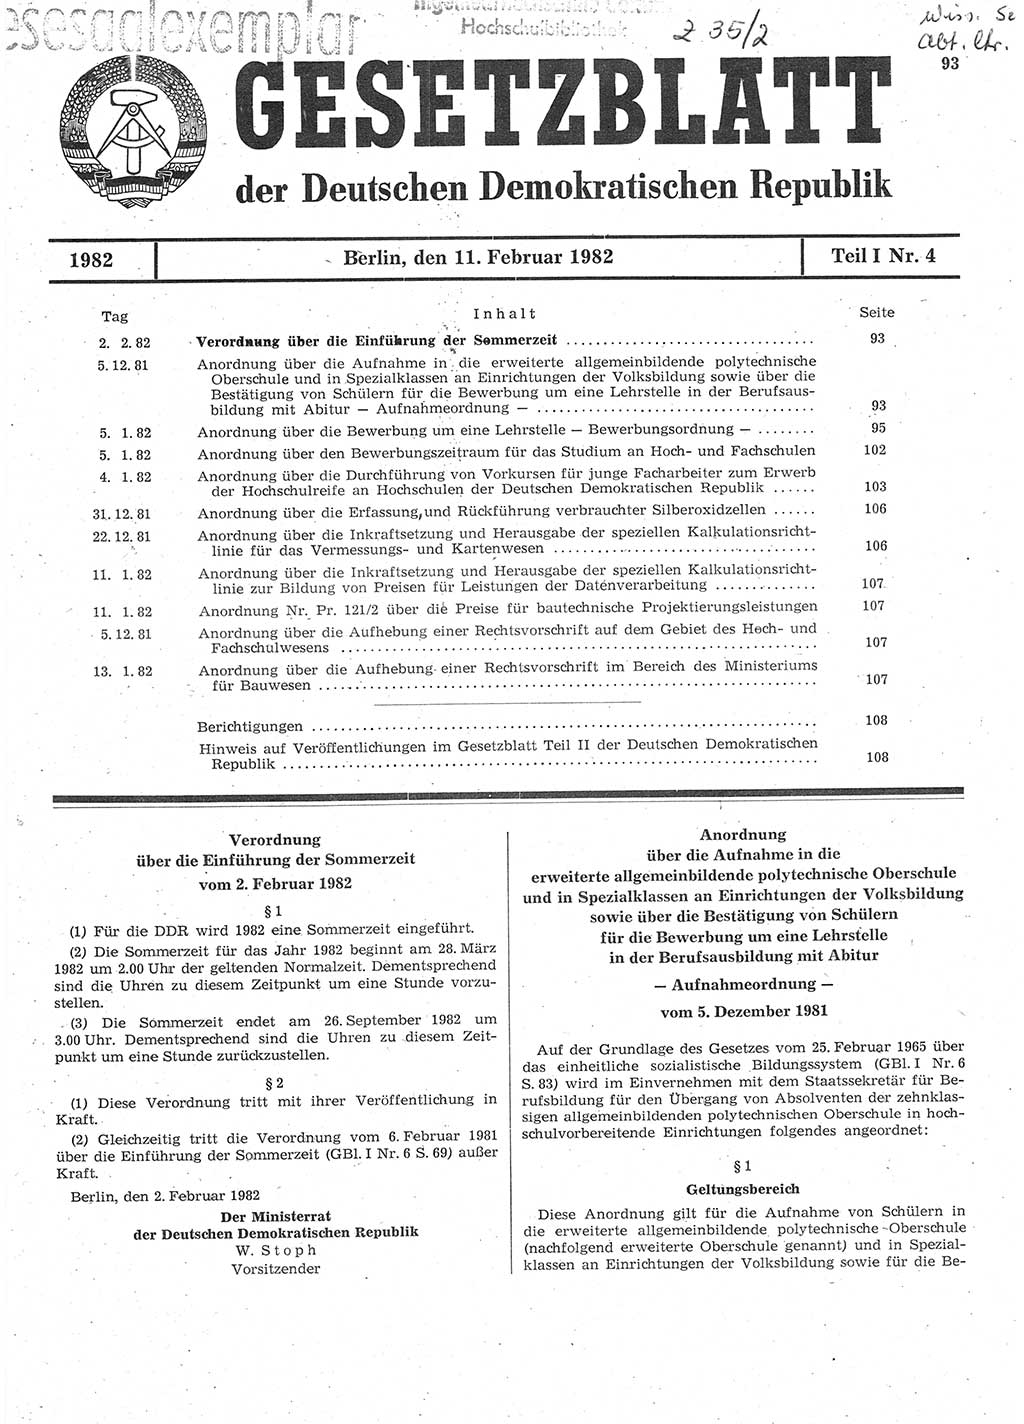 Gesetzblatt (GBl.) der Deutschen Demokratischen Republik (DDR) Teil Ⅰ 1982, Seite 93 (GBl. DDR Ⅰ 1982, S. 93)